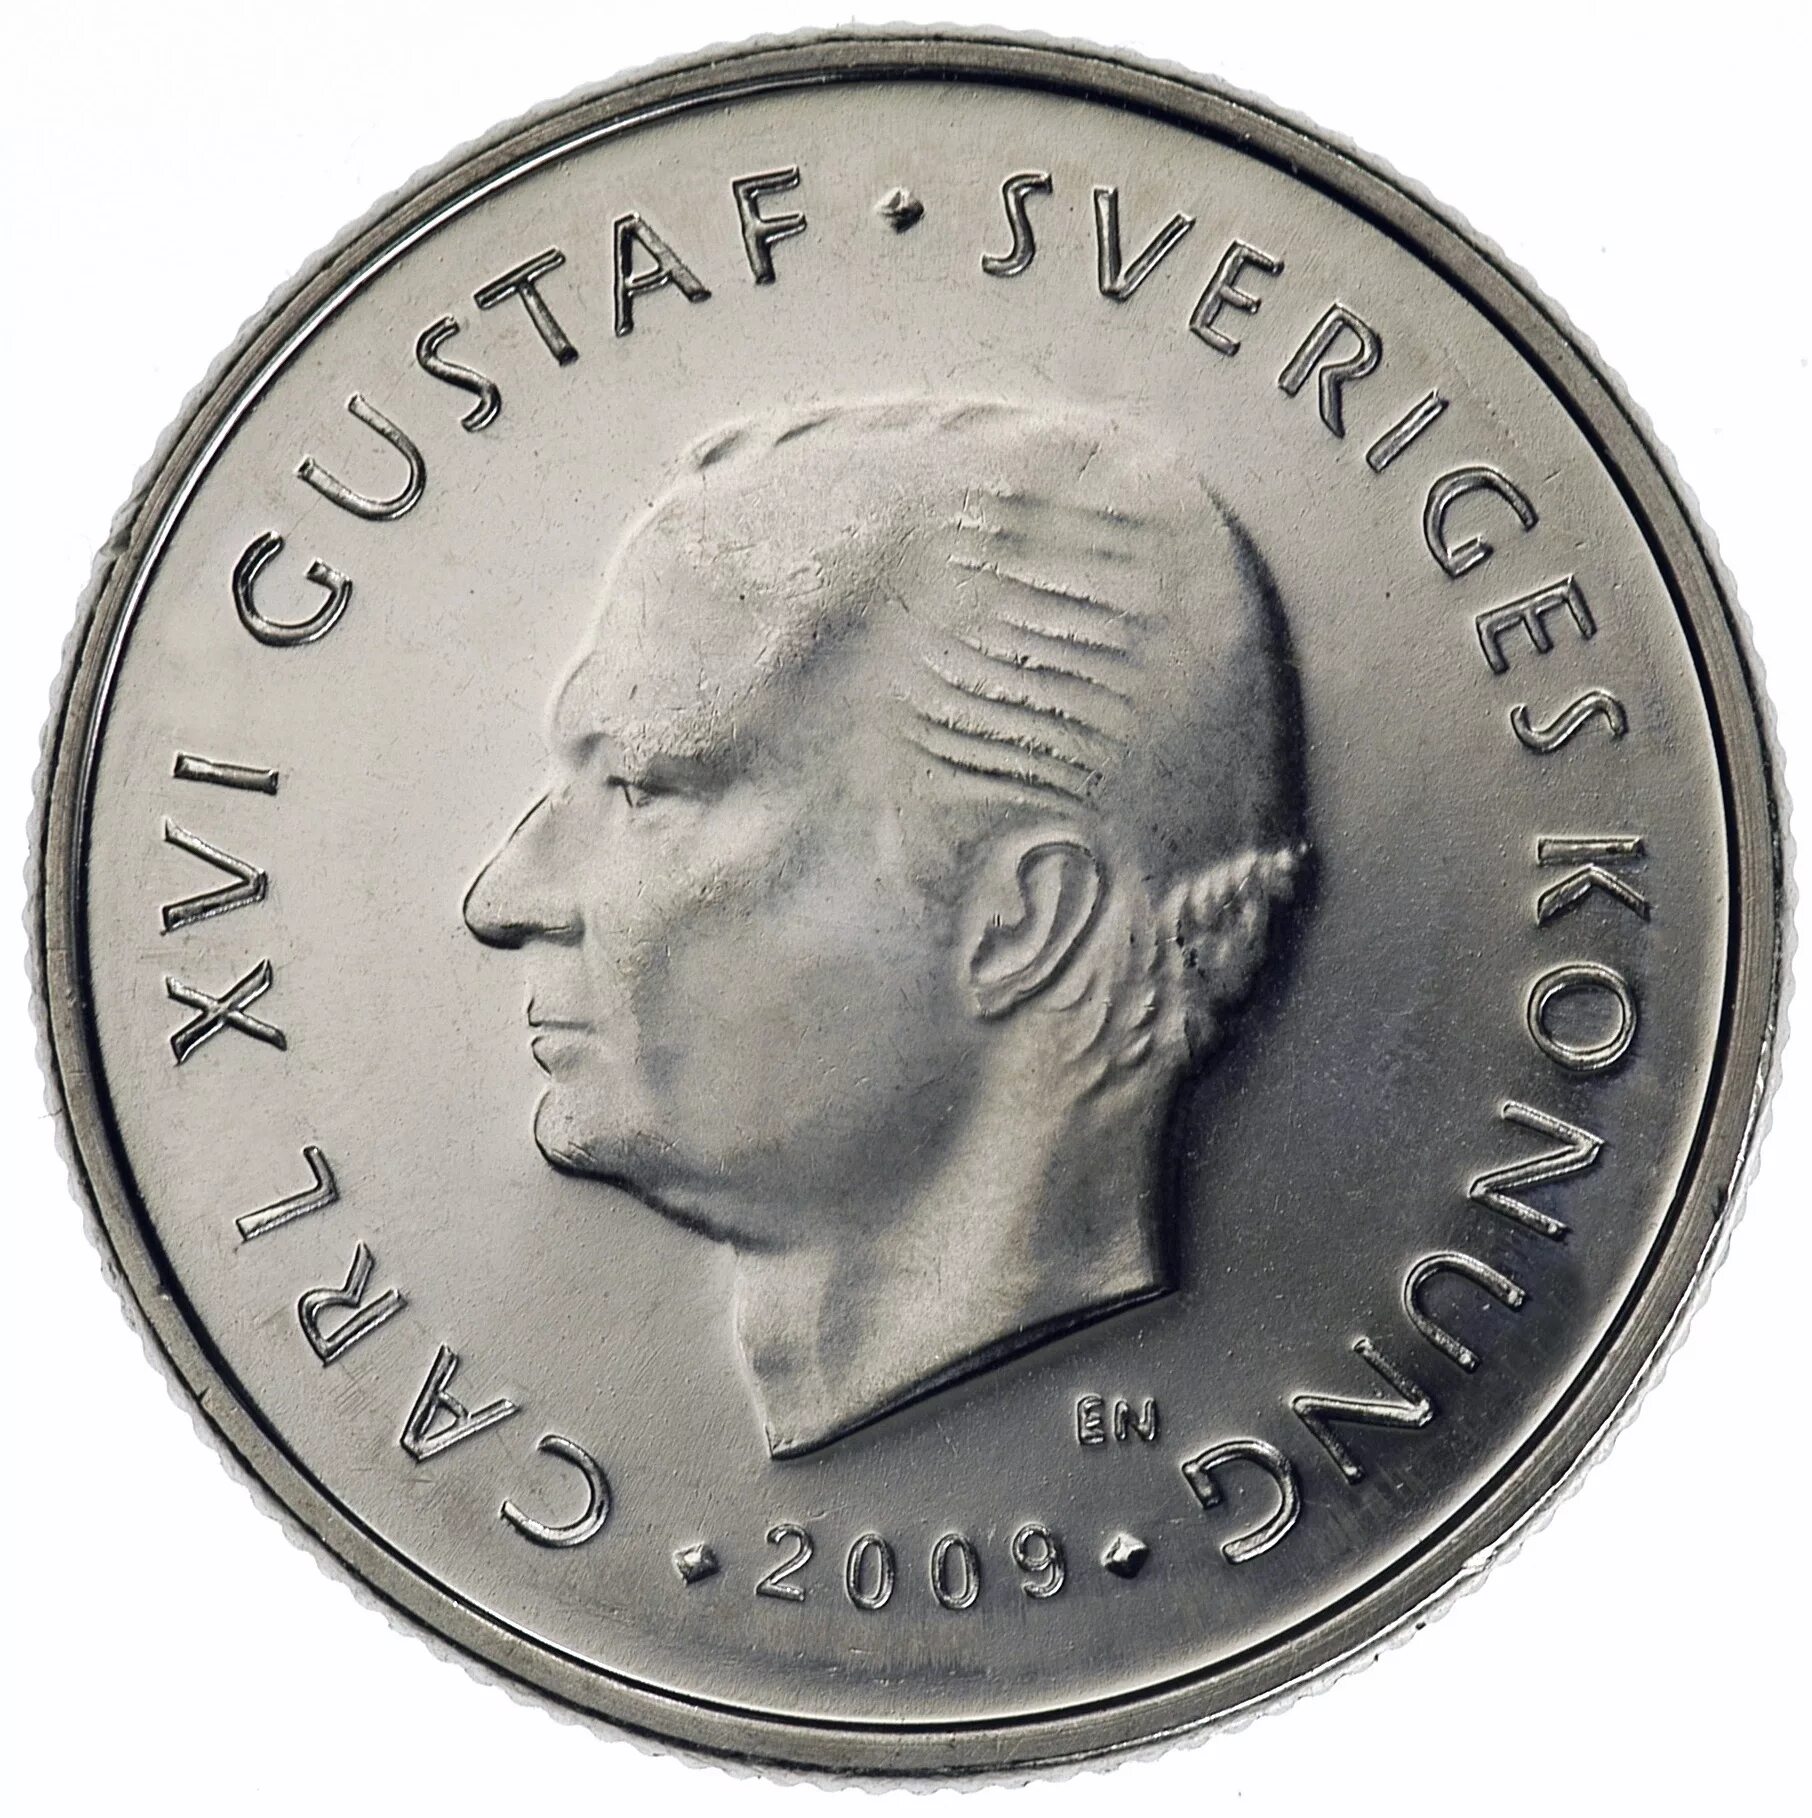 Шведская денежная единица. Монета Carl XVI Gustaf Sverige 2009. 1 Крона Швеция.